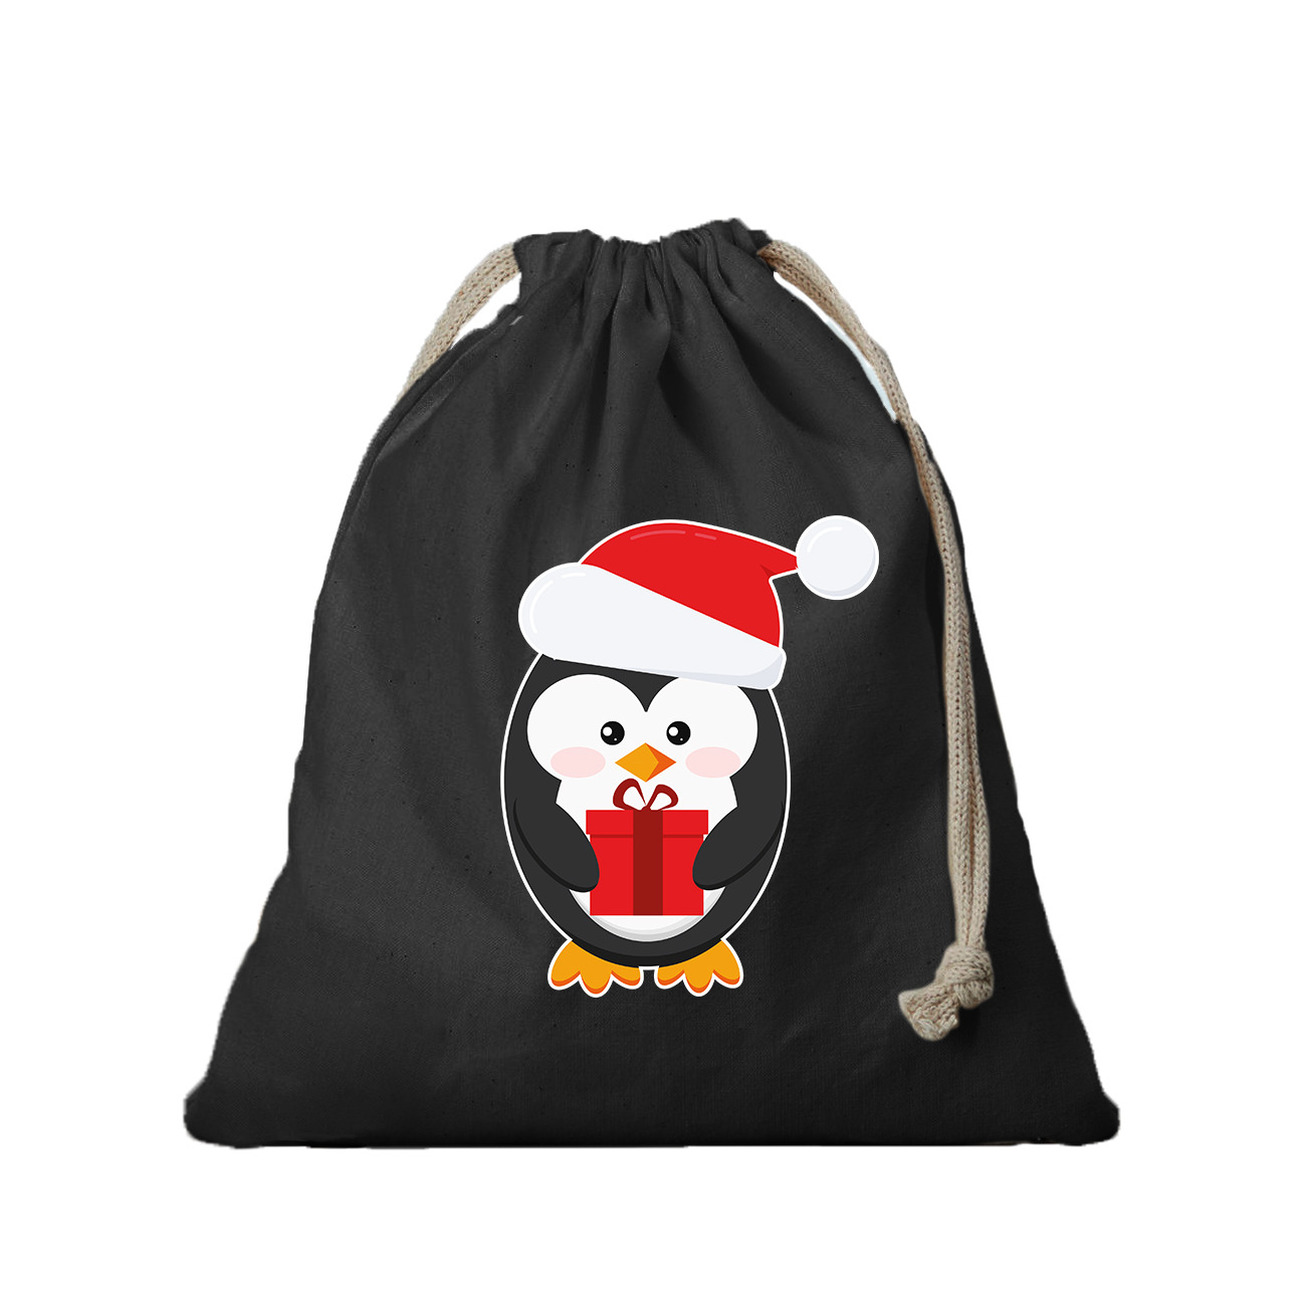 1x Kerst cadeauzak zwart Pinguin met koord voor als cadeauverpakking